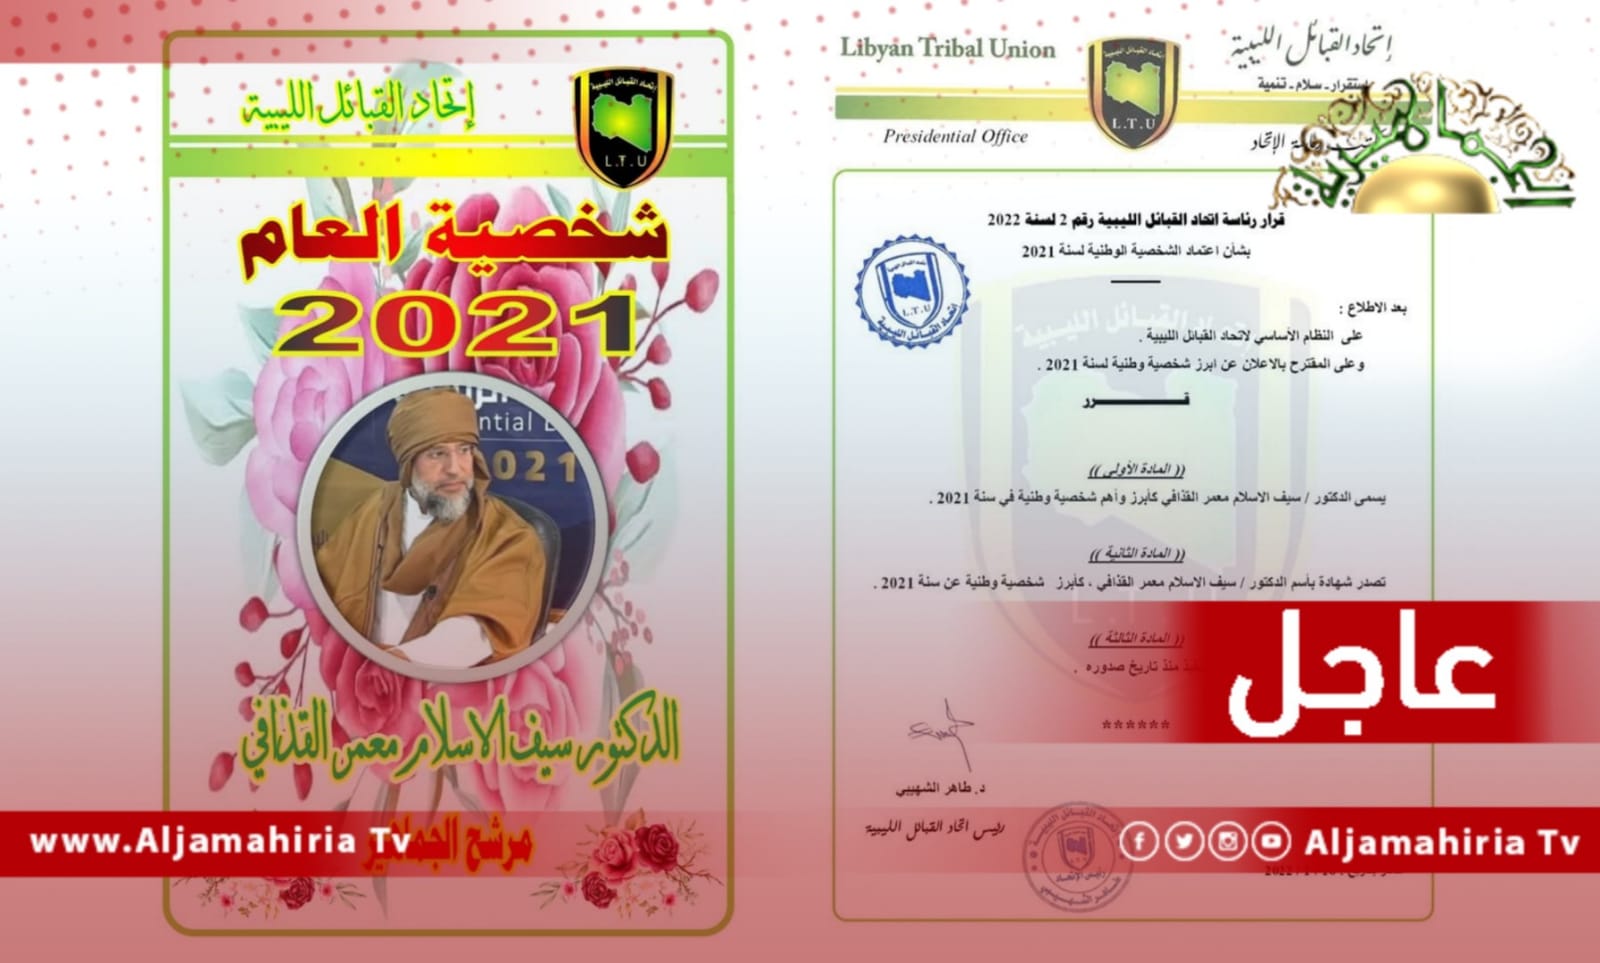 عاجل| اتحاد القبائل الليبية يسمي المرشح الرئاسي الدكتور سيف الإسلام القذافي كأبرز شخصية وطنية للعام 2021.